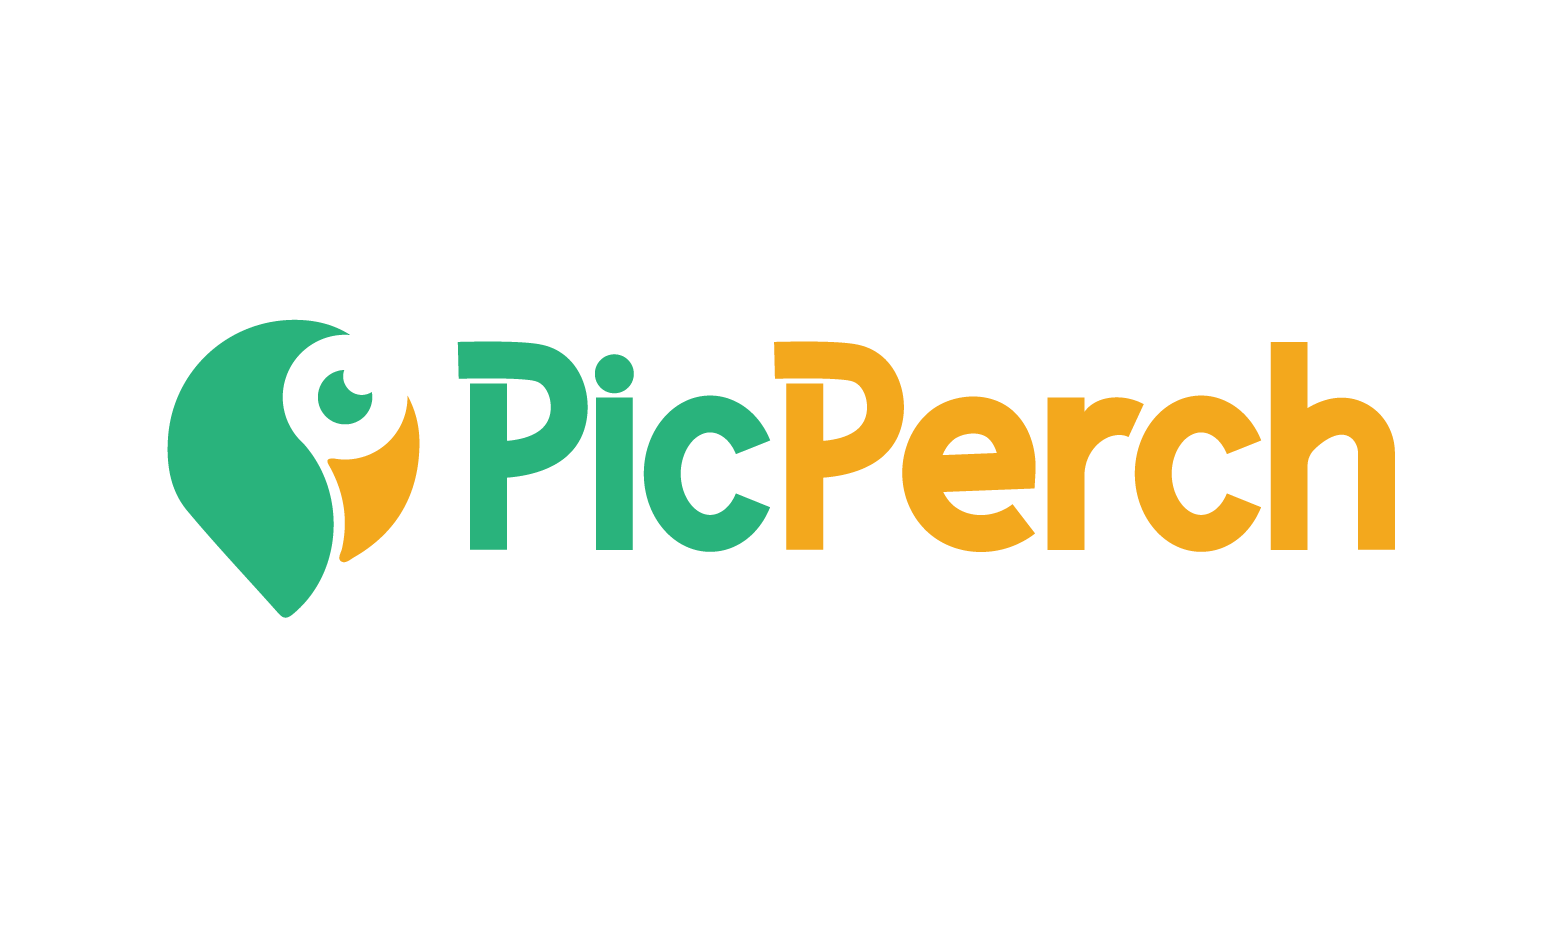 PicPerch.com - Creative brandable domain for sale